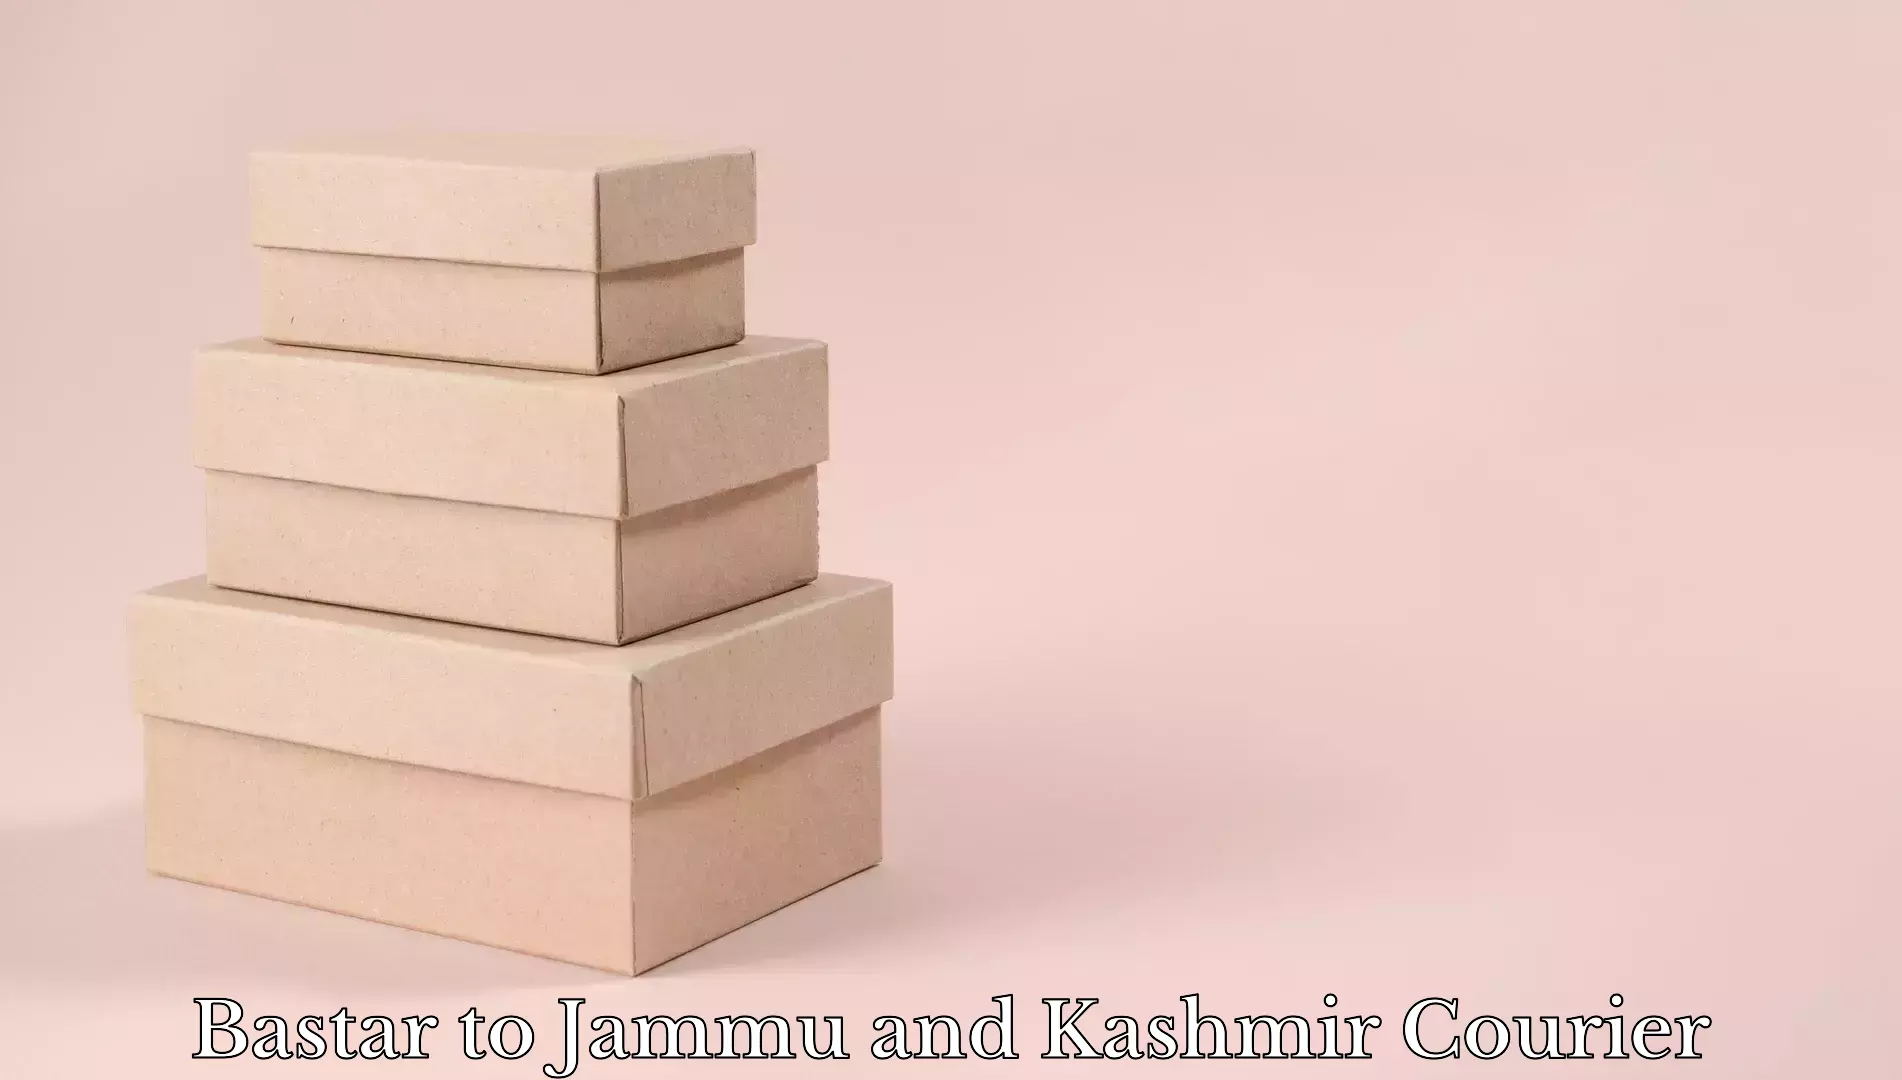 Luggage delivery news Bastar to Srinagar Kashmir